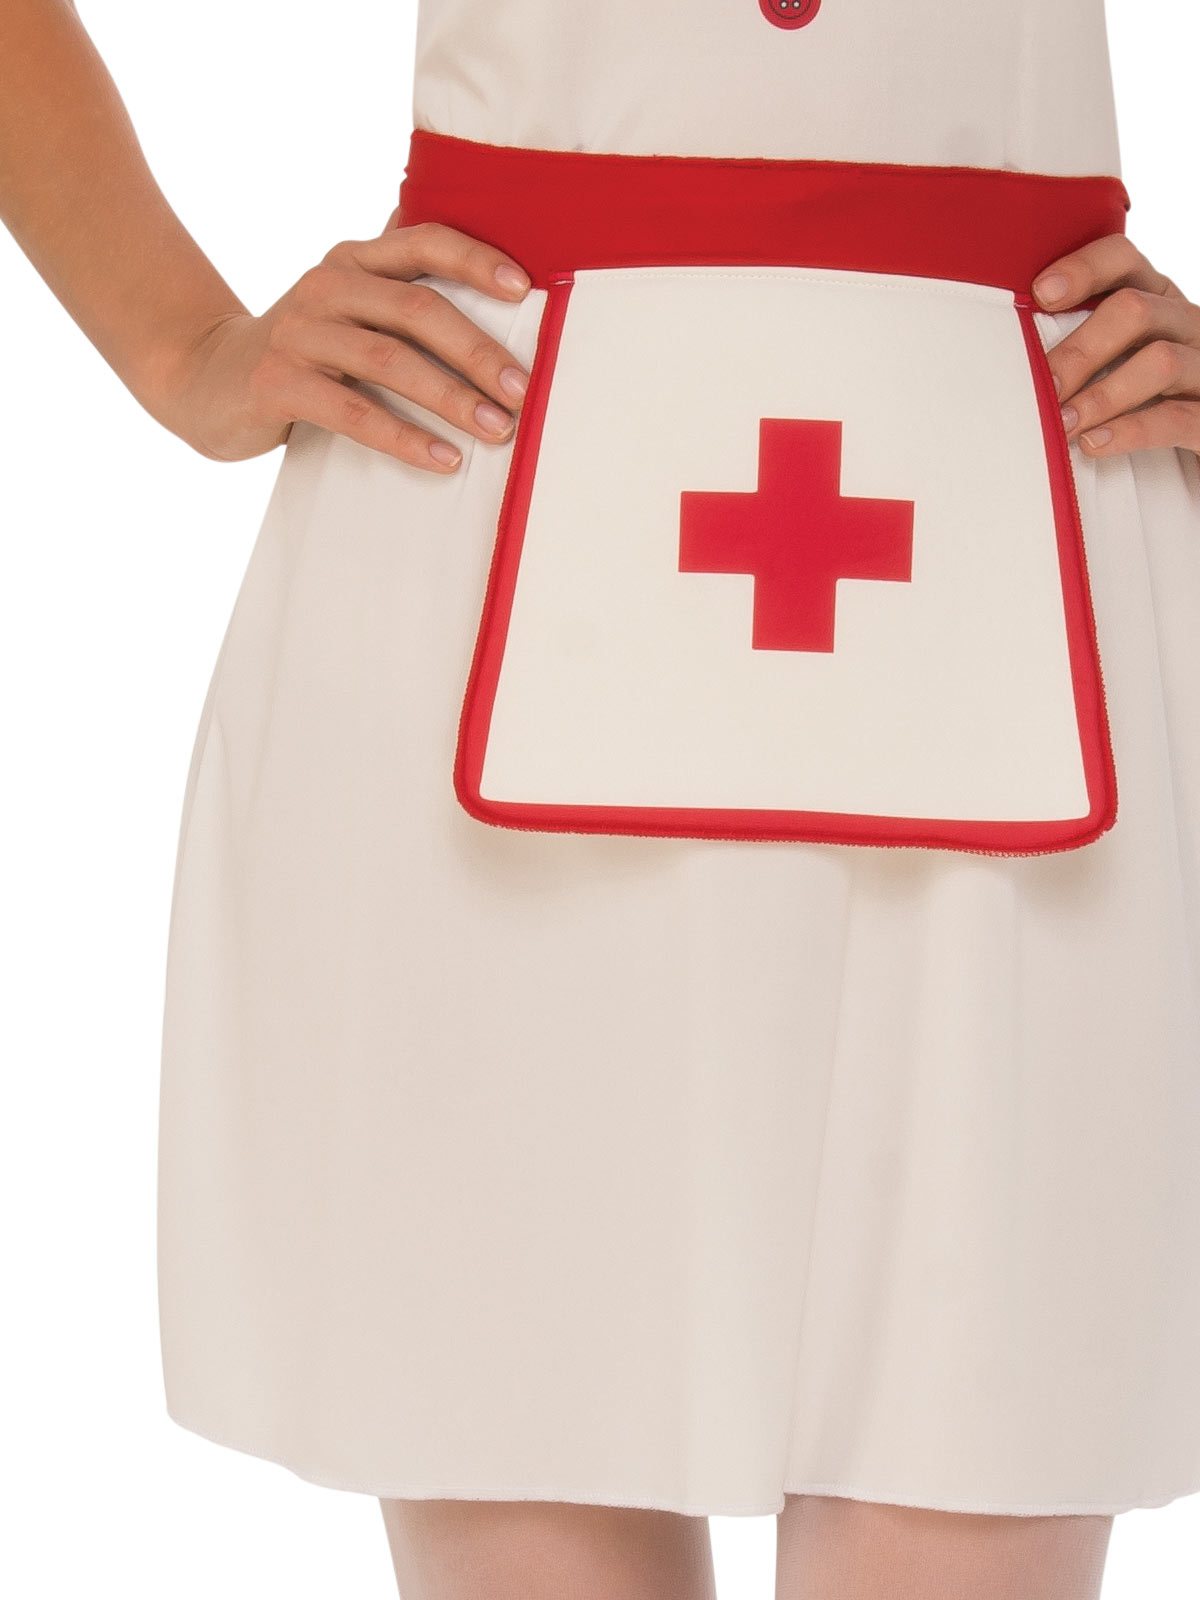 Costume Adult Nurse Small